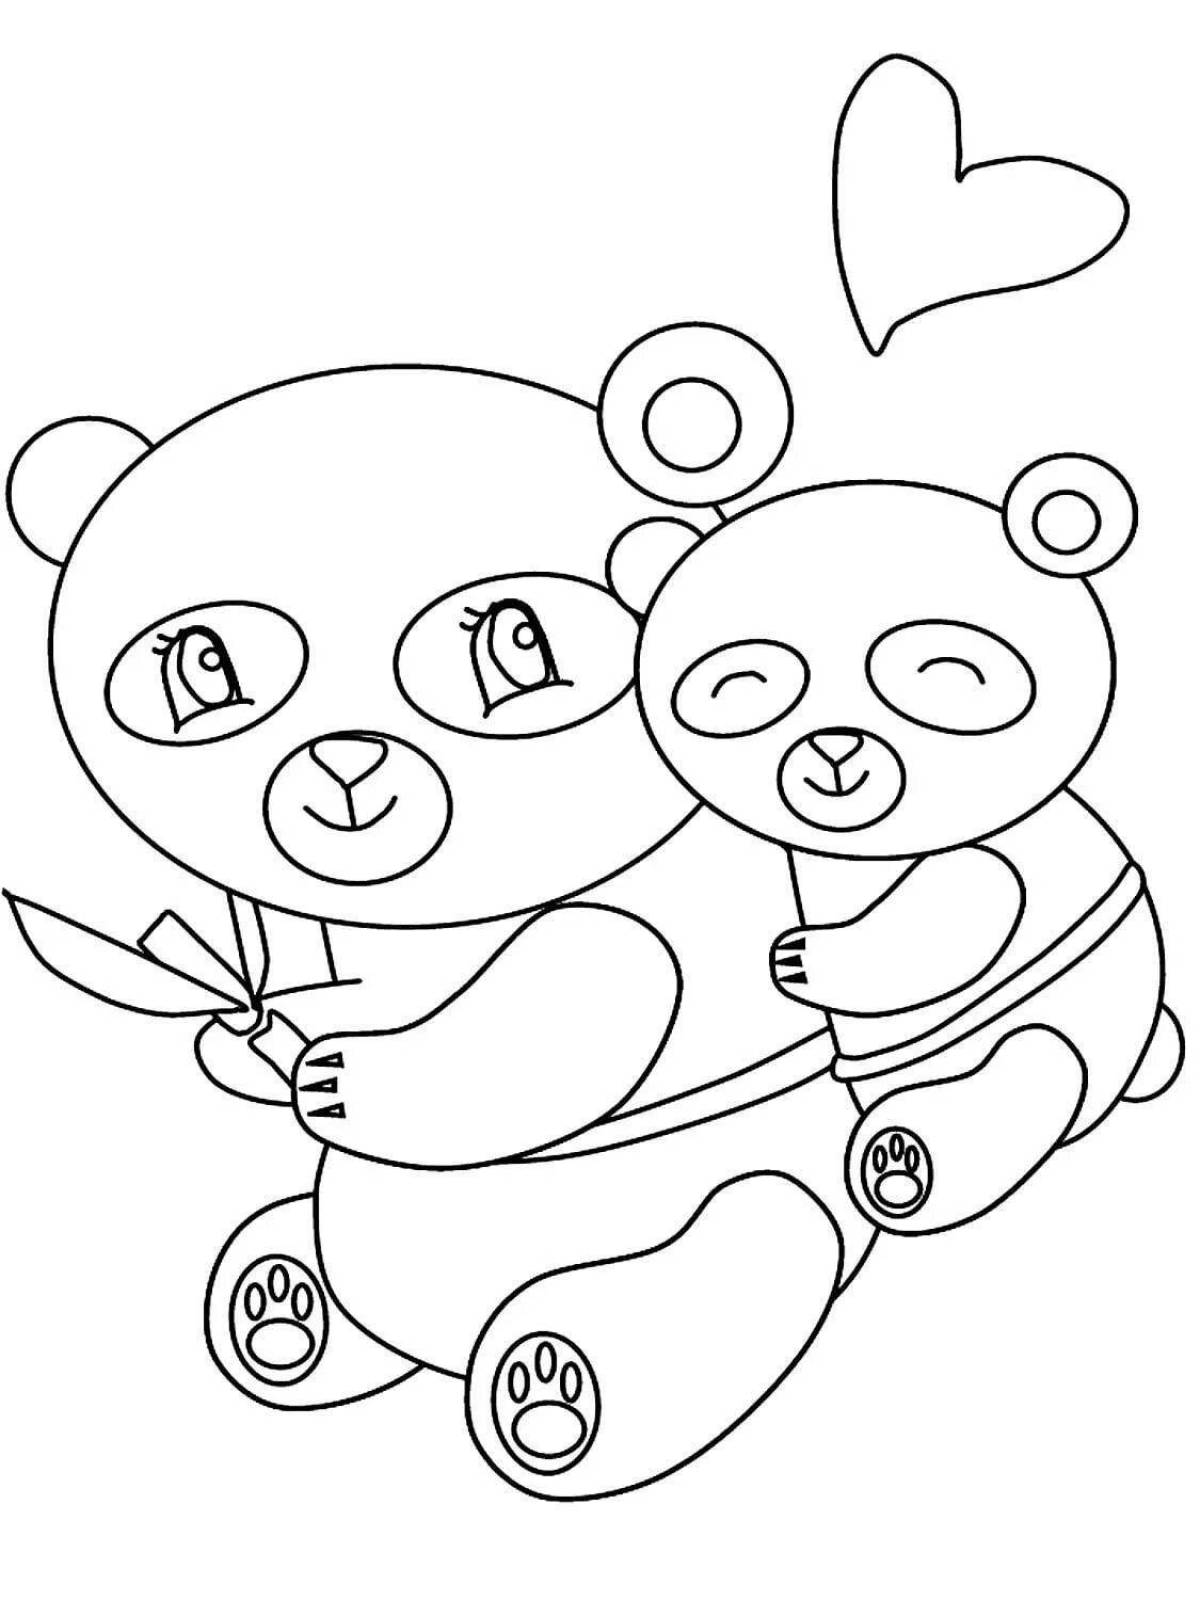 Потрясающая раскраска панда для детей